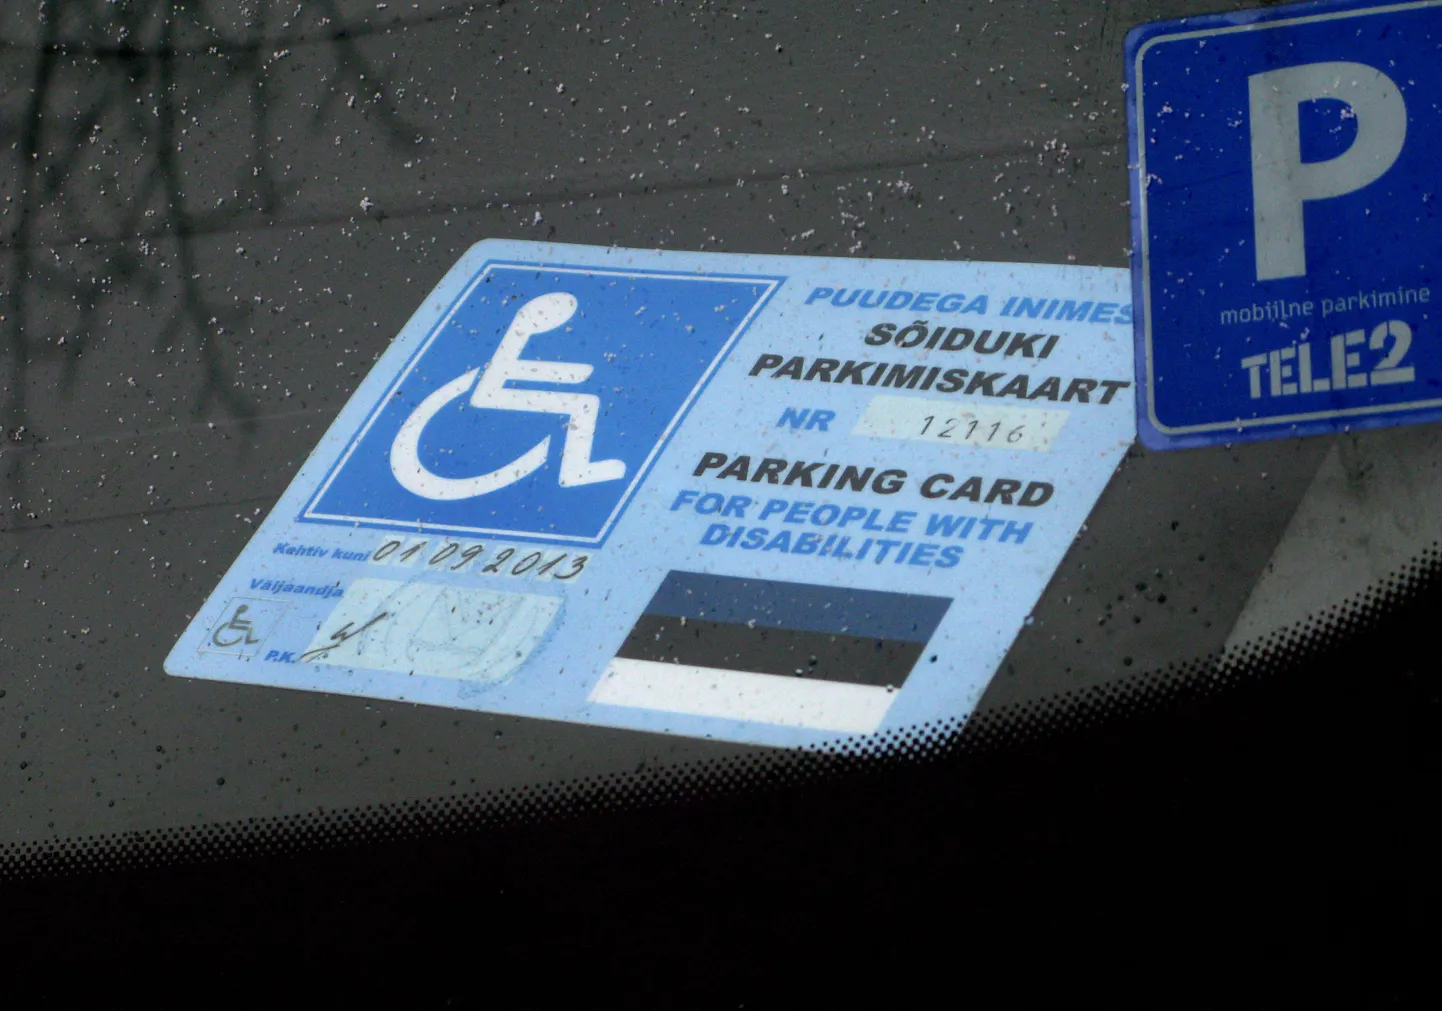 Invaliidile väljastatud parkimiskaart.